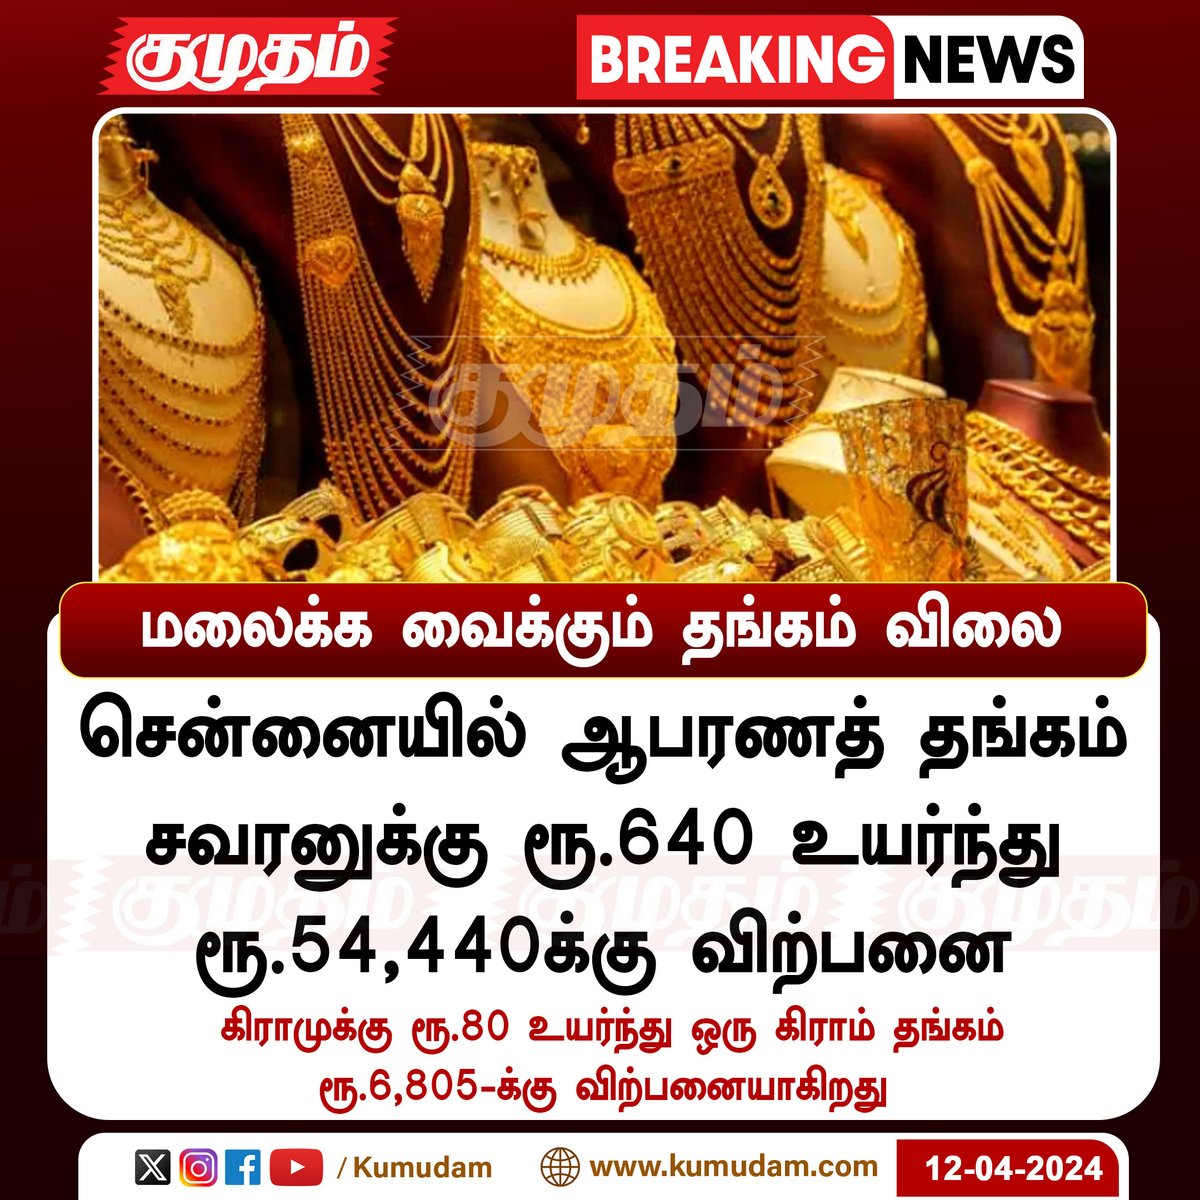 மலைக்க வைக்கும் தங்கம் விலை..!

#Kumudam | #GoldPrice | #priceincrease | #BREAKING_NEWS | #marketplace | #commercial | #economy | #Shocking | #todaynews | #NewsUpdates | #Hike | #TamilnaduNews | #Chennai |